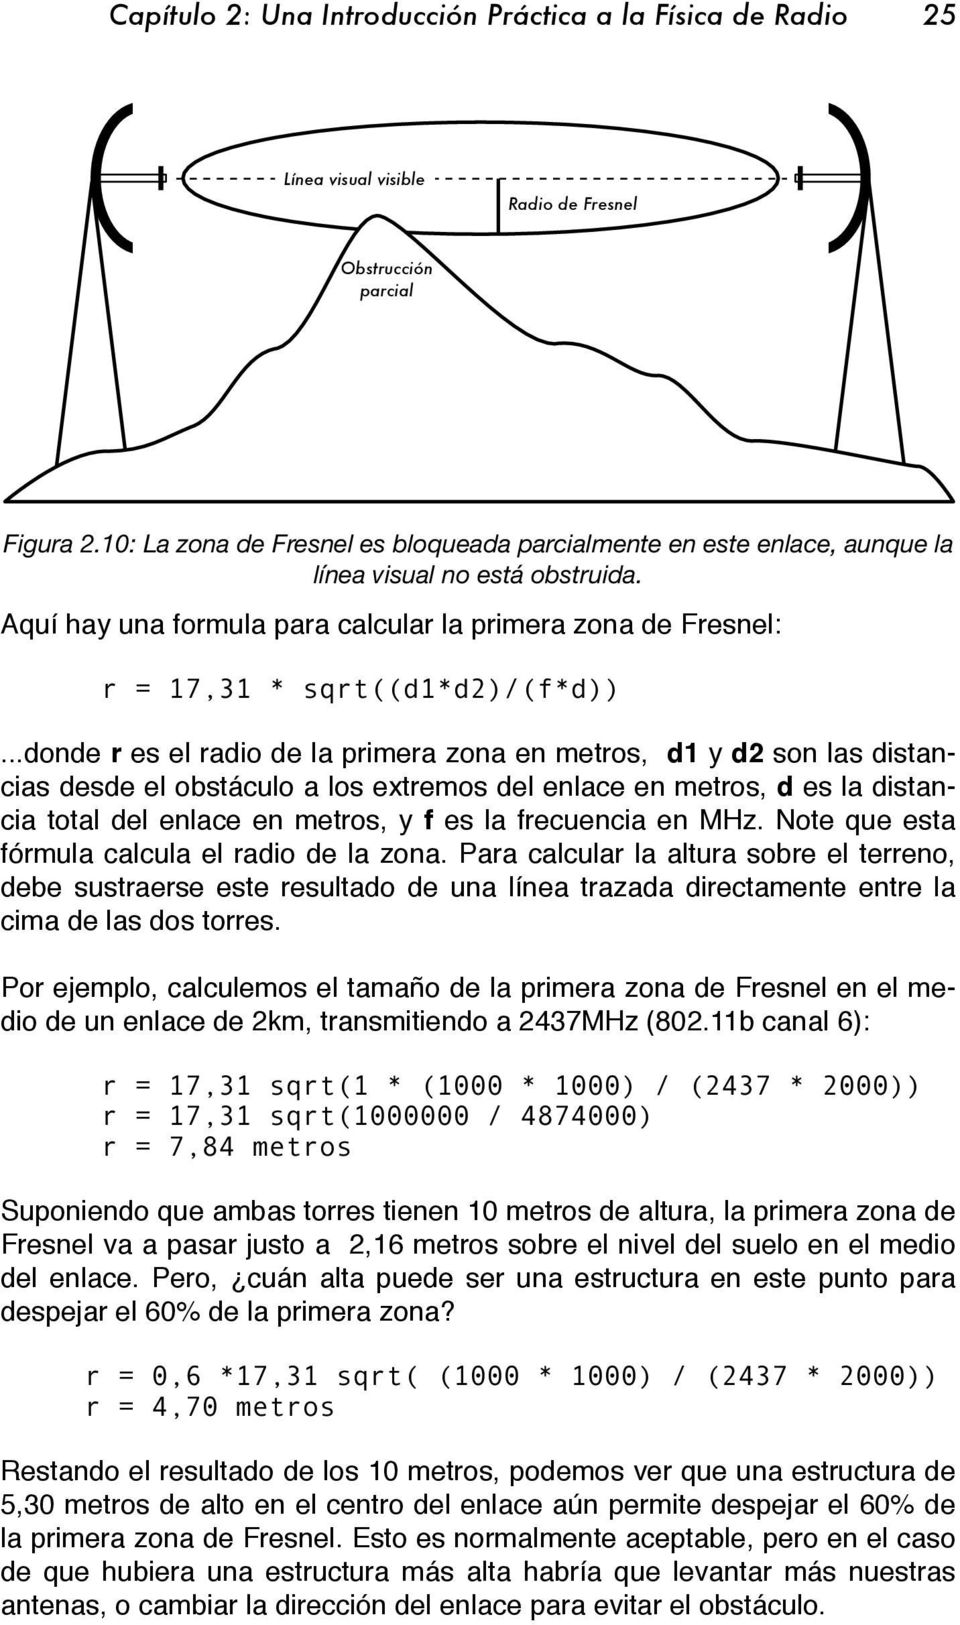 Aquí hay una formula para calcular la primera zona de Fresnel: r = 17,31 * sqrt((d1*d2)/(f*d)).